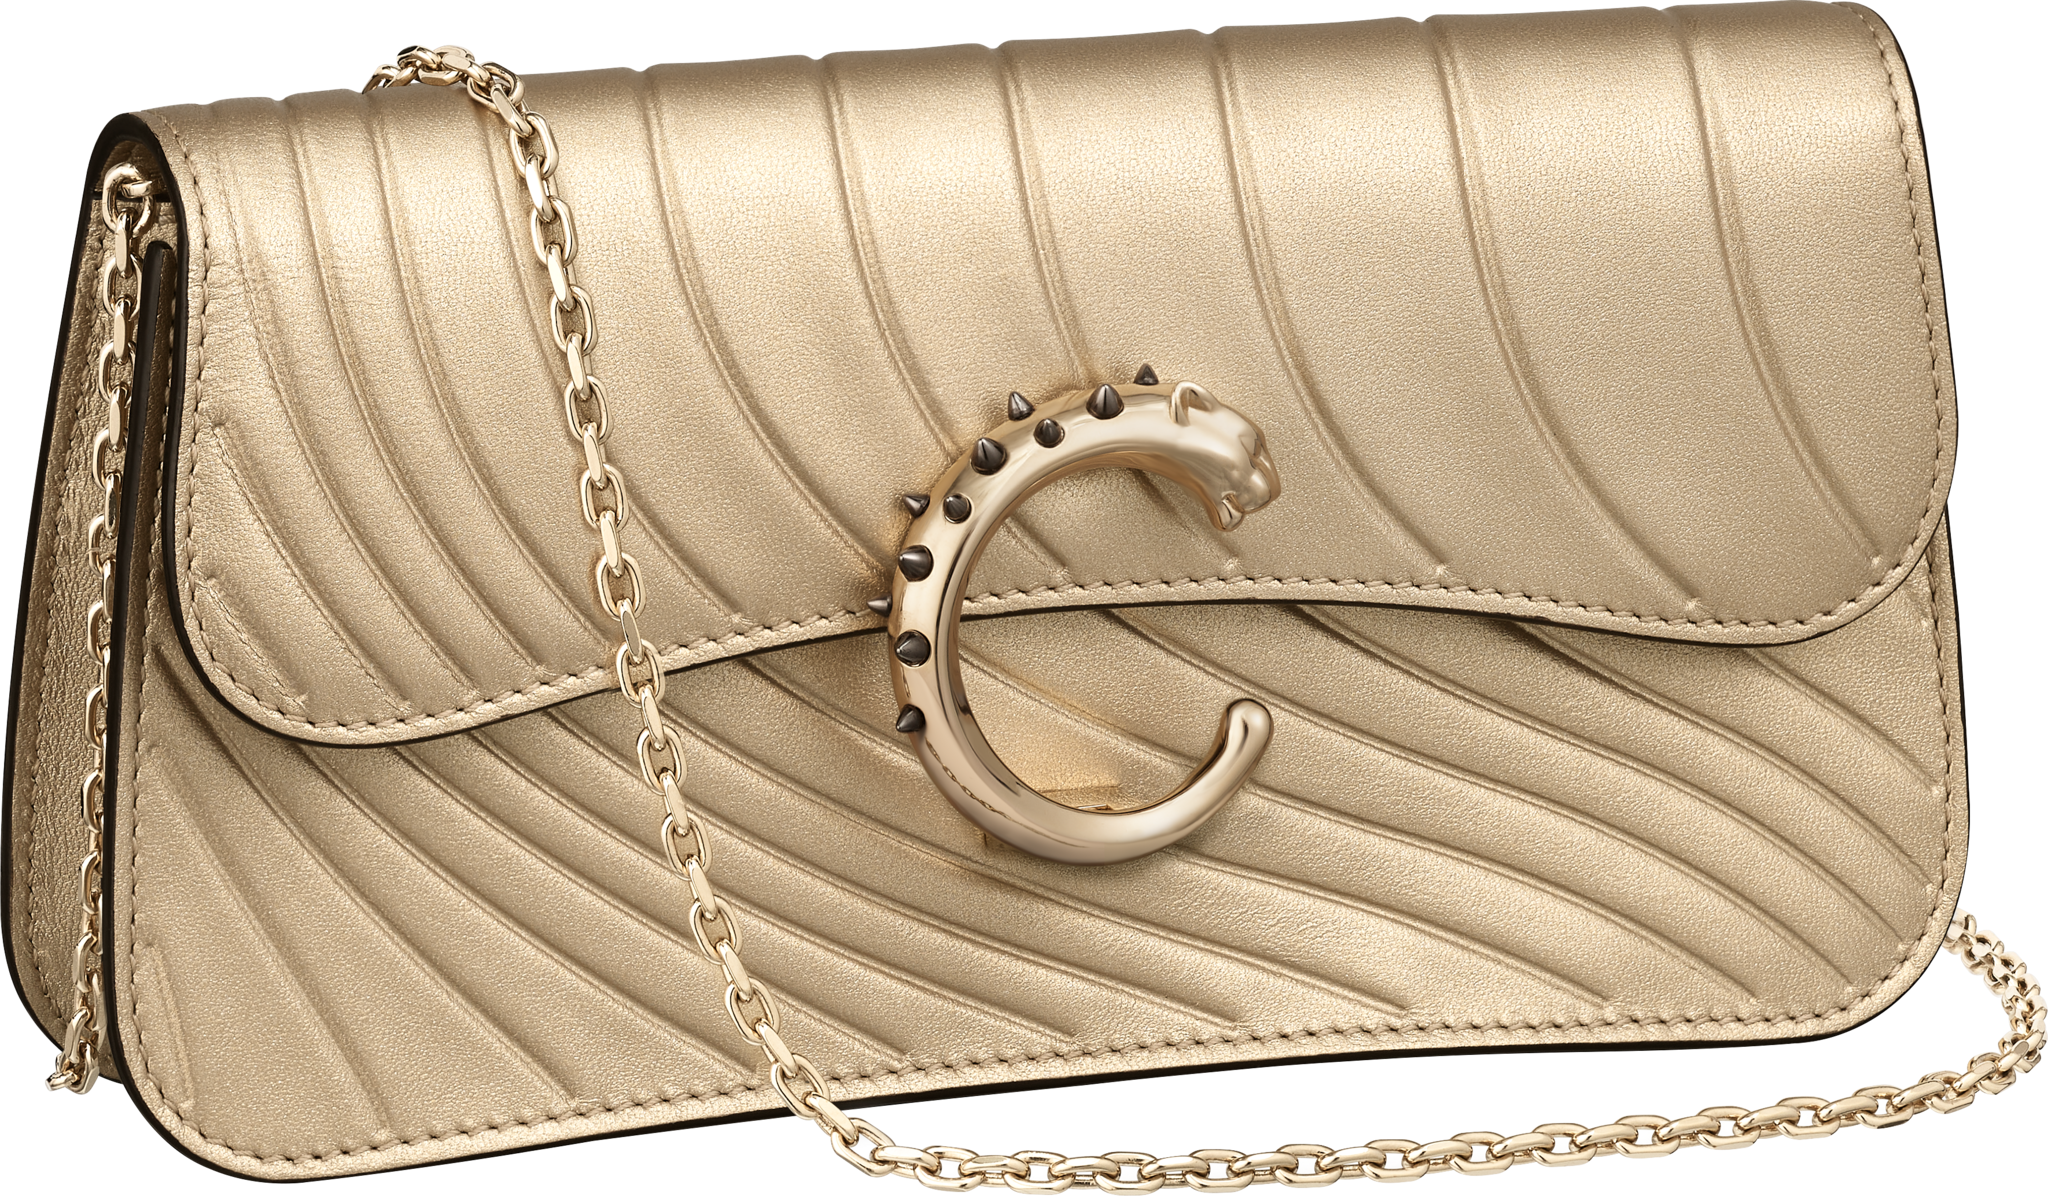 Panthère de Cartier卡地亚猎豹系列迷你款链条手袋金色金属质感小牛皮，烫印卡地亚标识图案，镀金饰面 